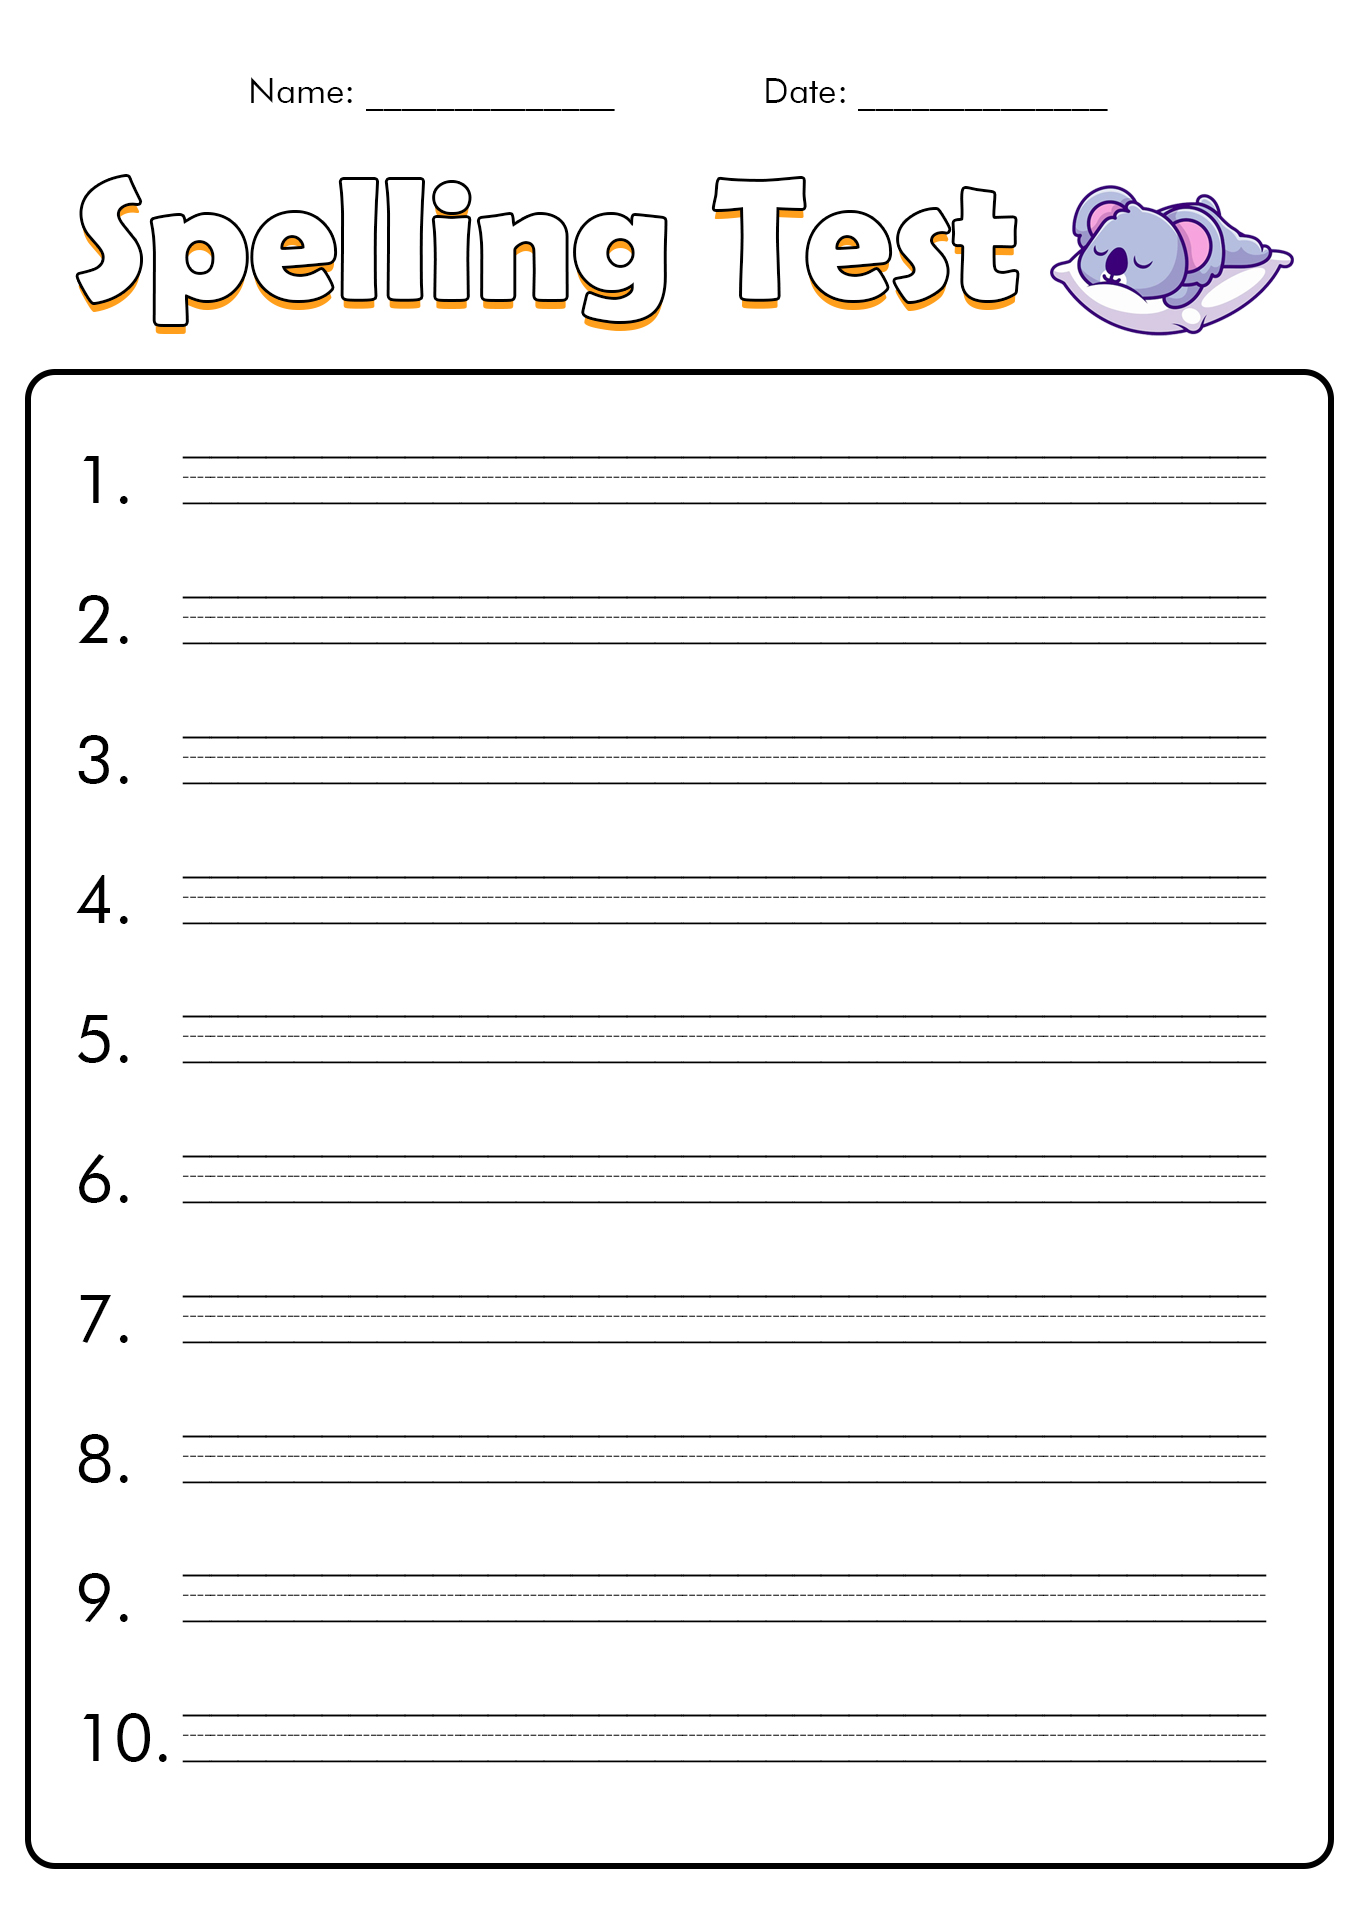 10 Best Images Of Free Printable Spelling Test Worksheets Printable Spelling Practice